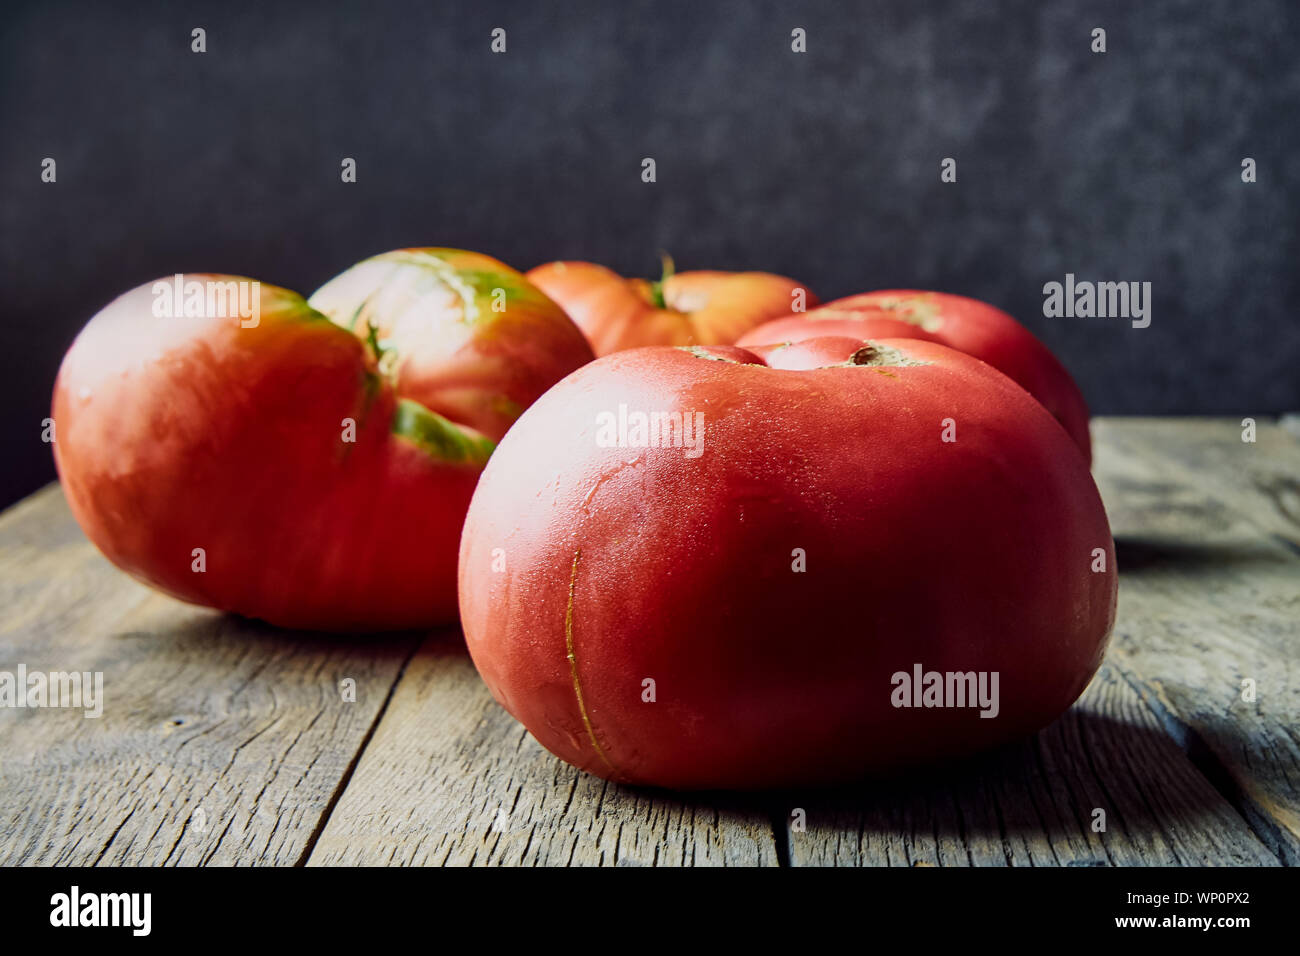 Colorate, fresche, grandi homegrown pomodori su un vecchio tavolo di legno. La raccolta . Foto Stock